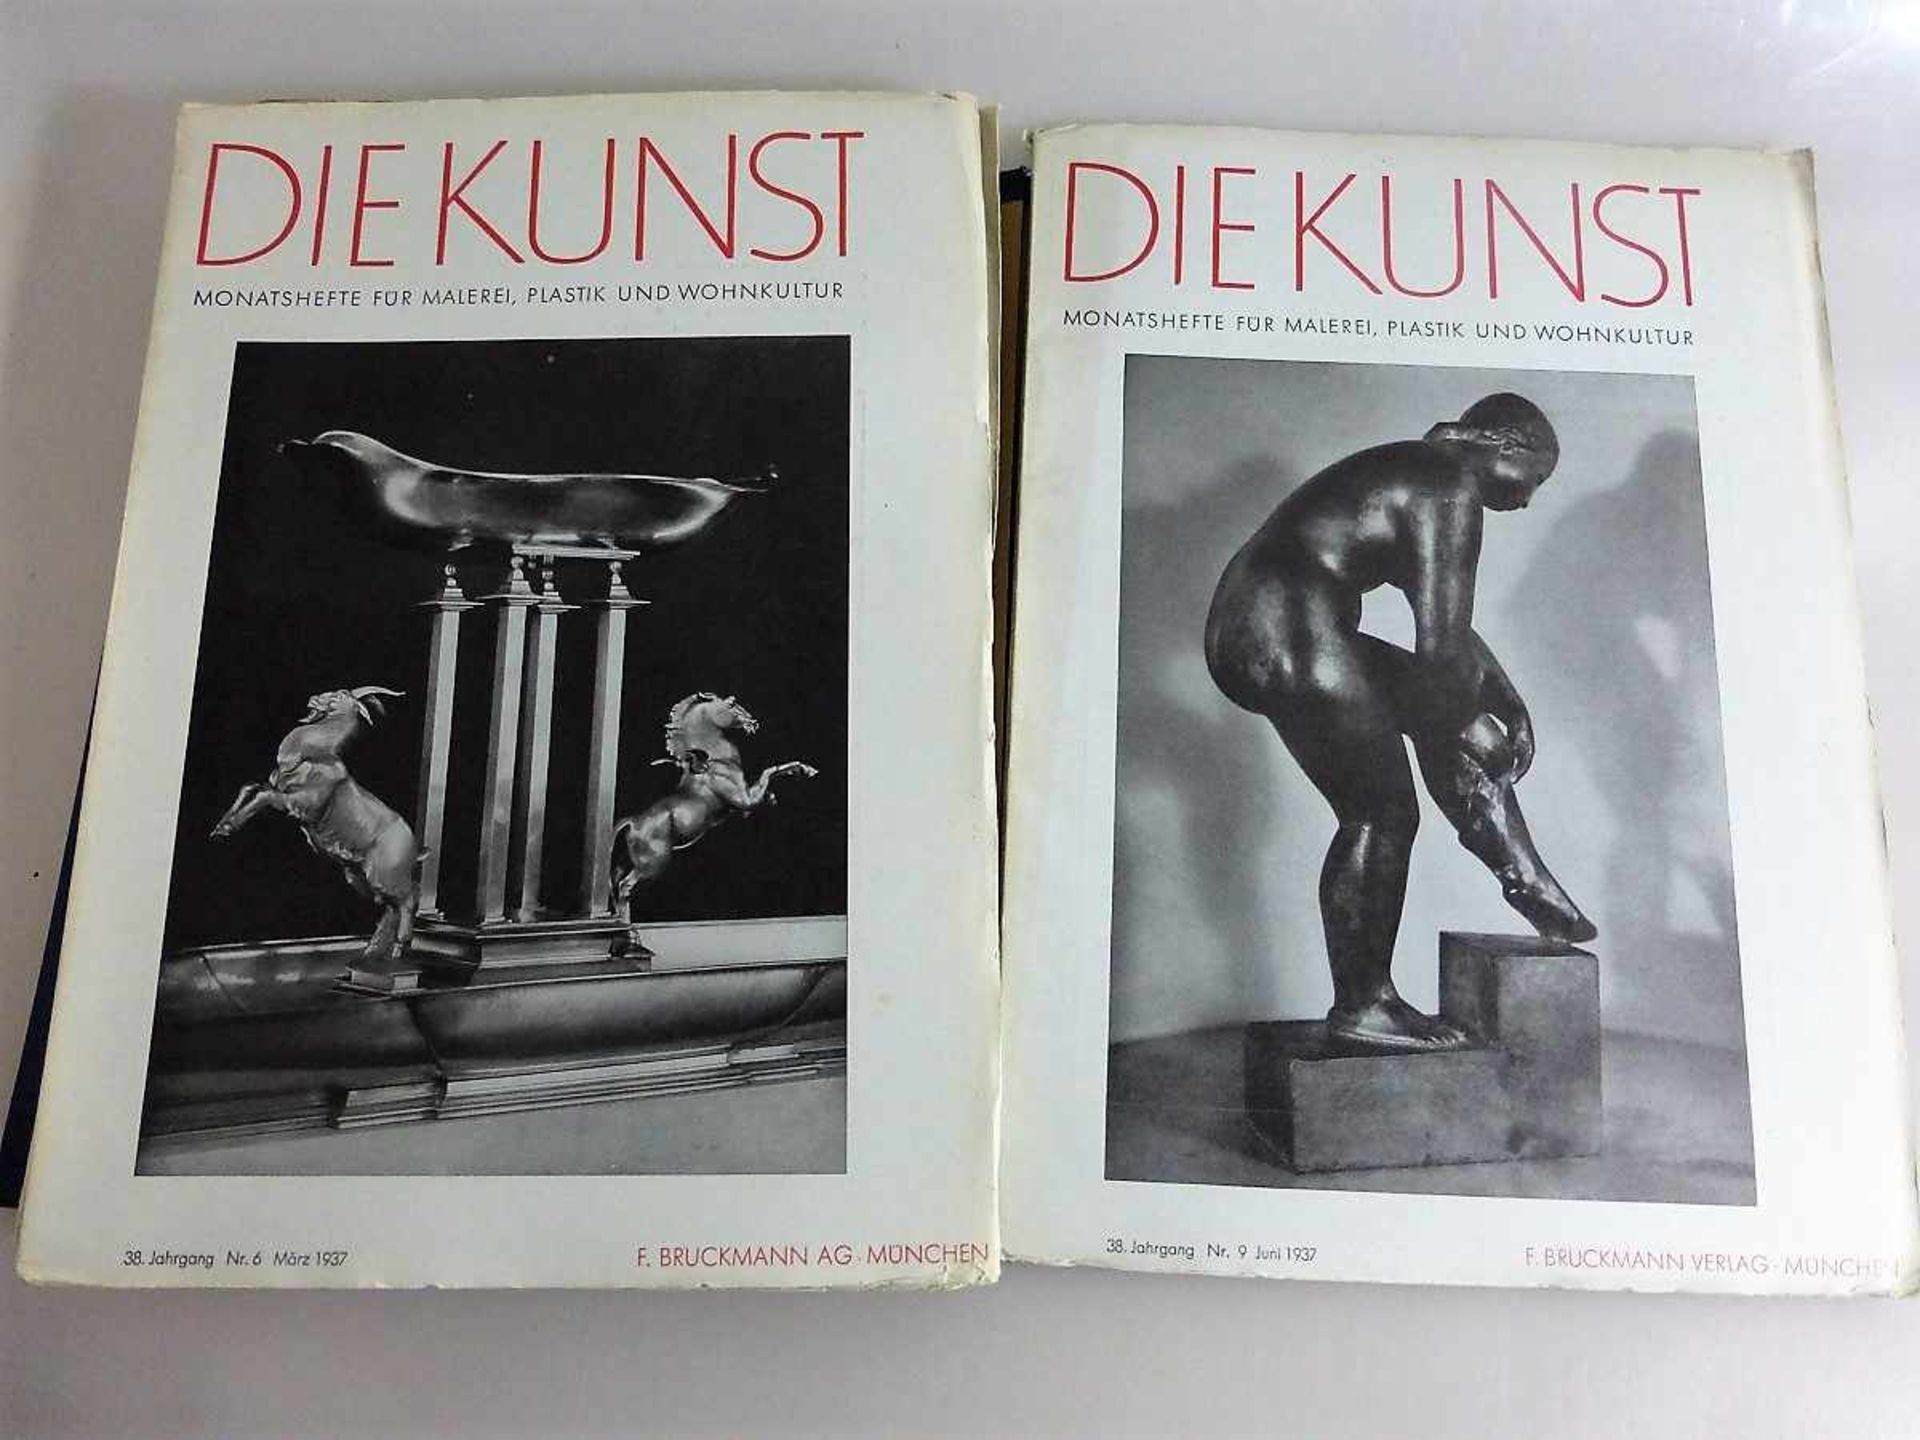 Die Kunst - Monatshefte für Malerei, Plastik und Wohnkultur, 24 Ausgaben (12x 1926/27 - 3x< - Image 2 of 2